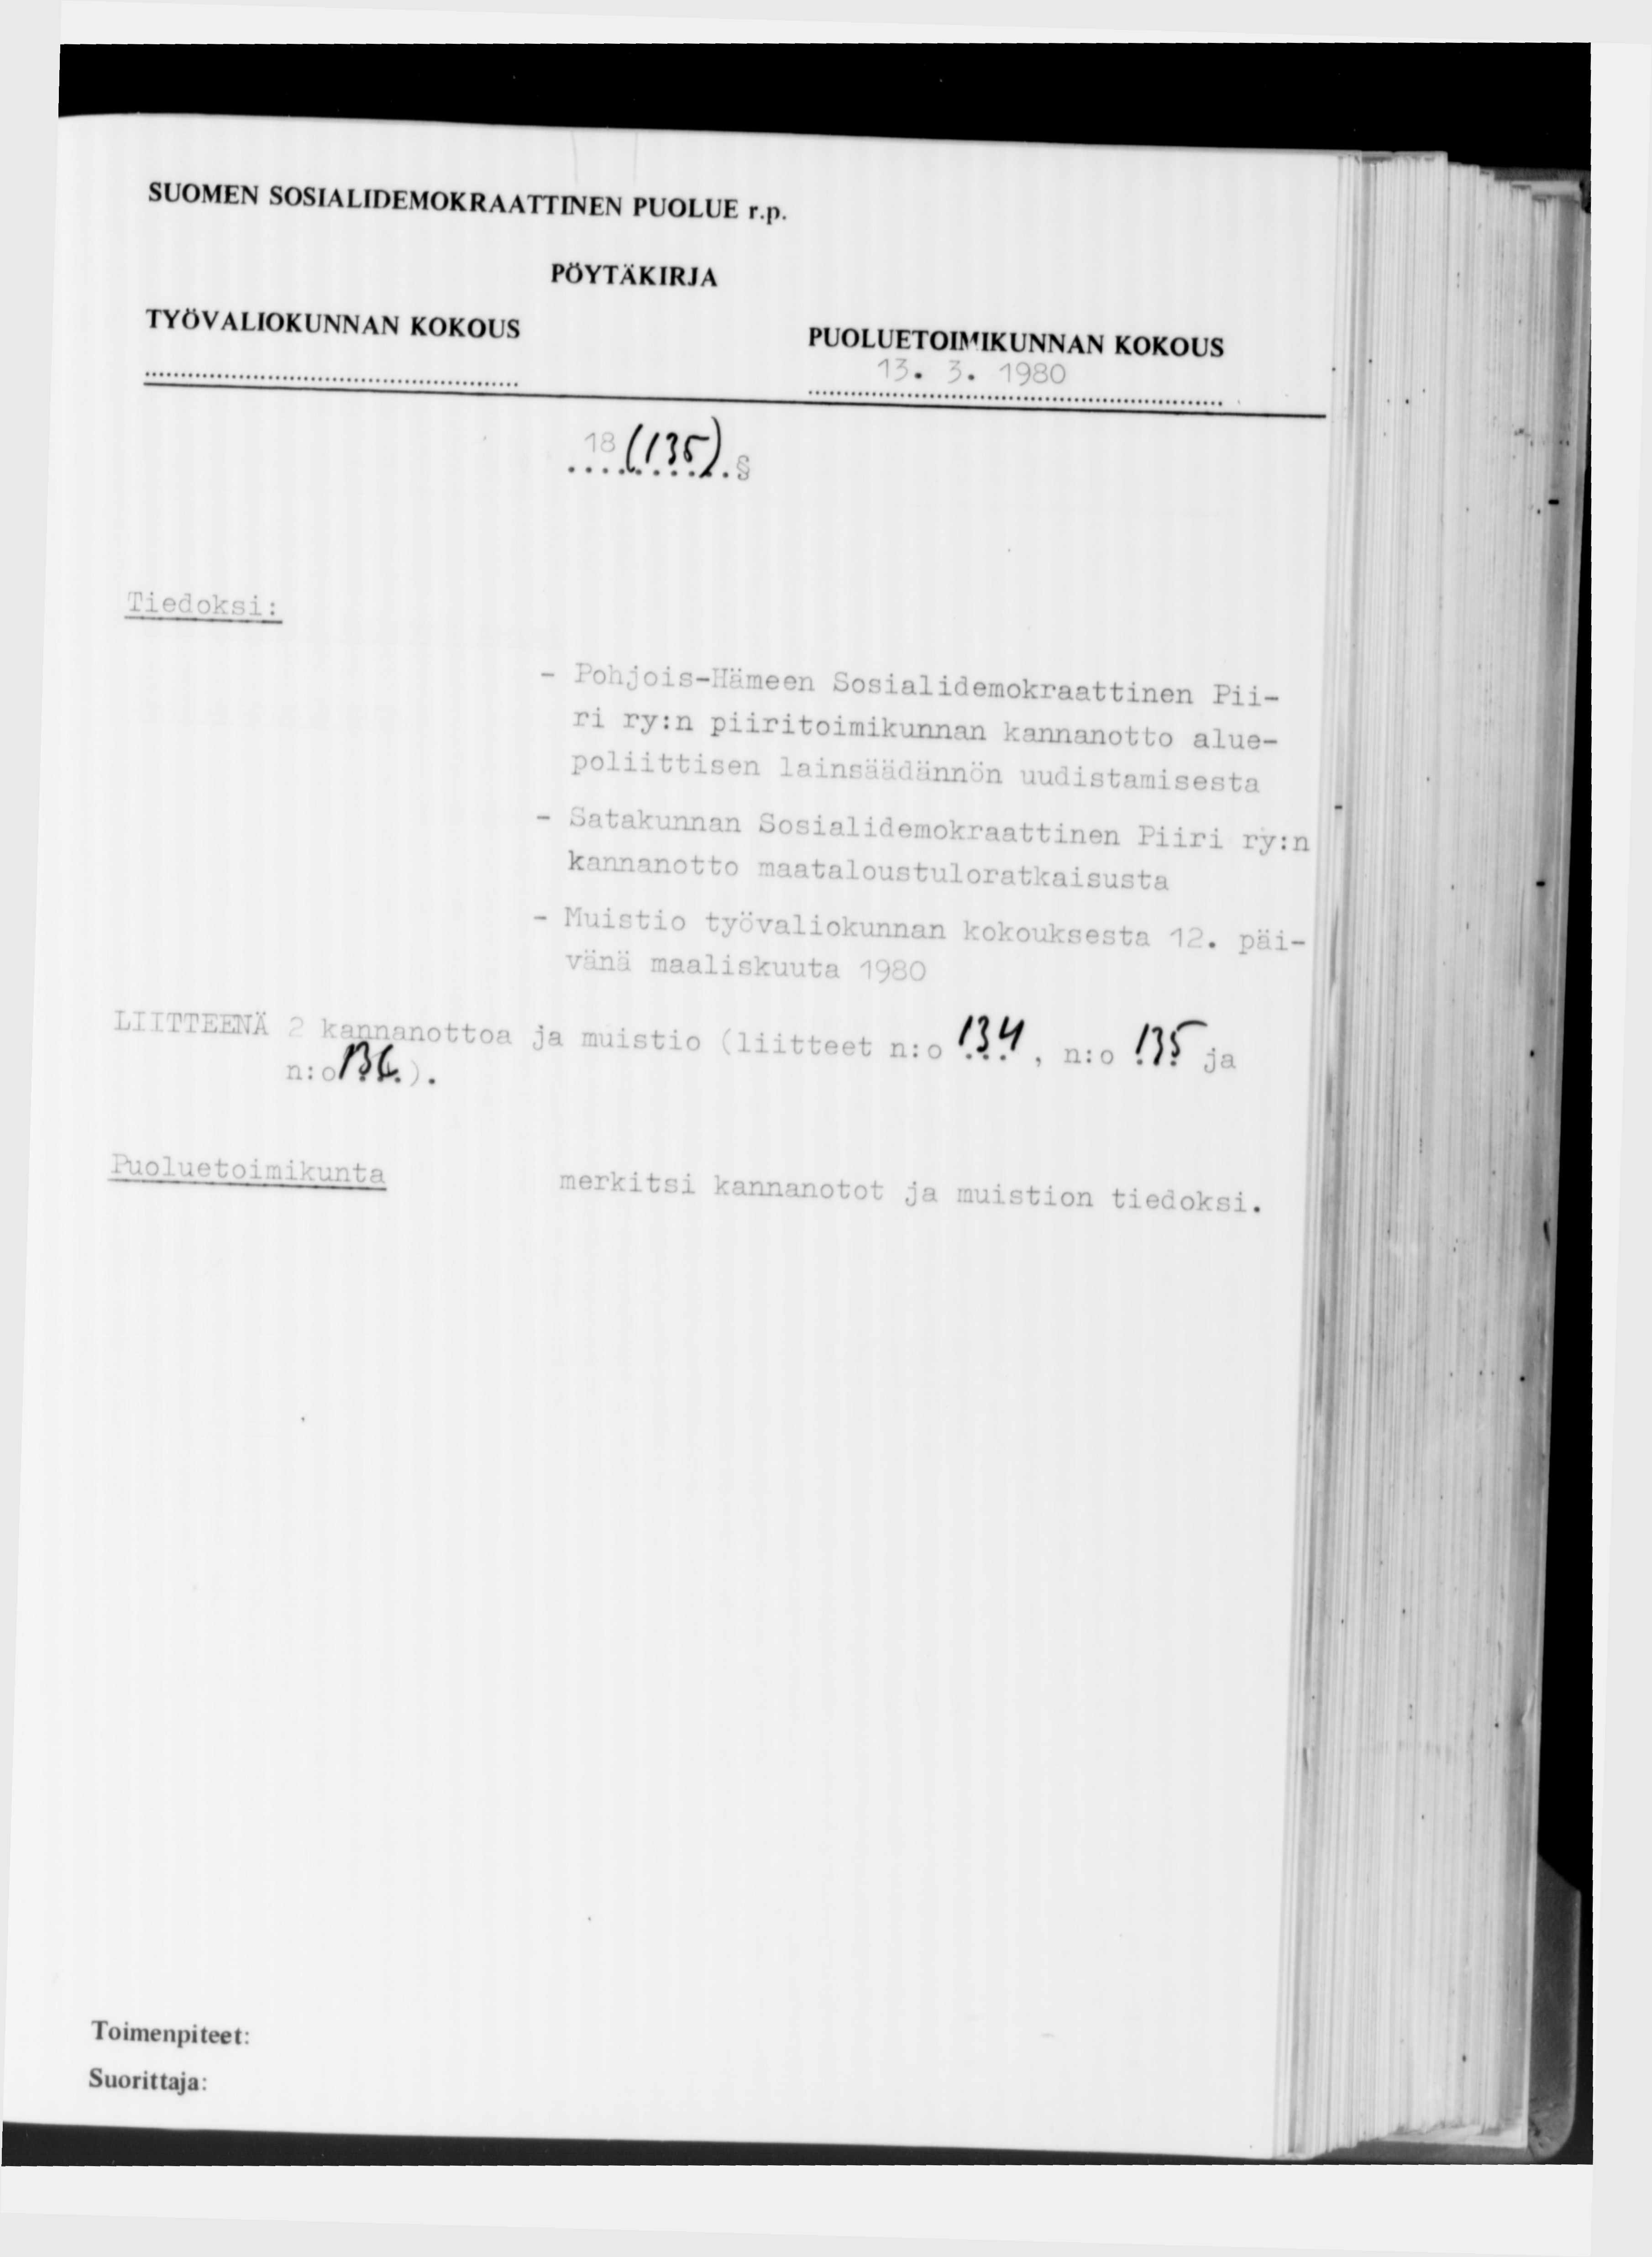 SUOMEN SOSIALIDEMOKRAATTINEN PUOLUE r.p 1 3. 3. 1980 18 Kk). Tiedoksi: - Pohjois-Hämeen Sosialidemokraattinen Piiri ry.